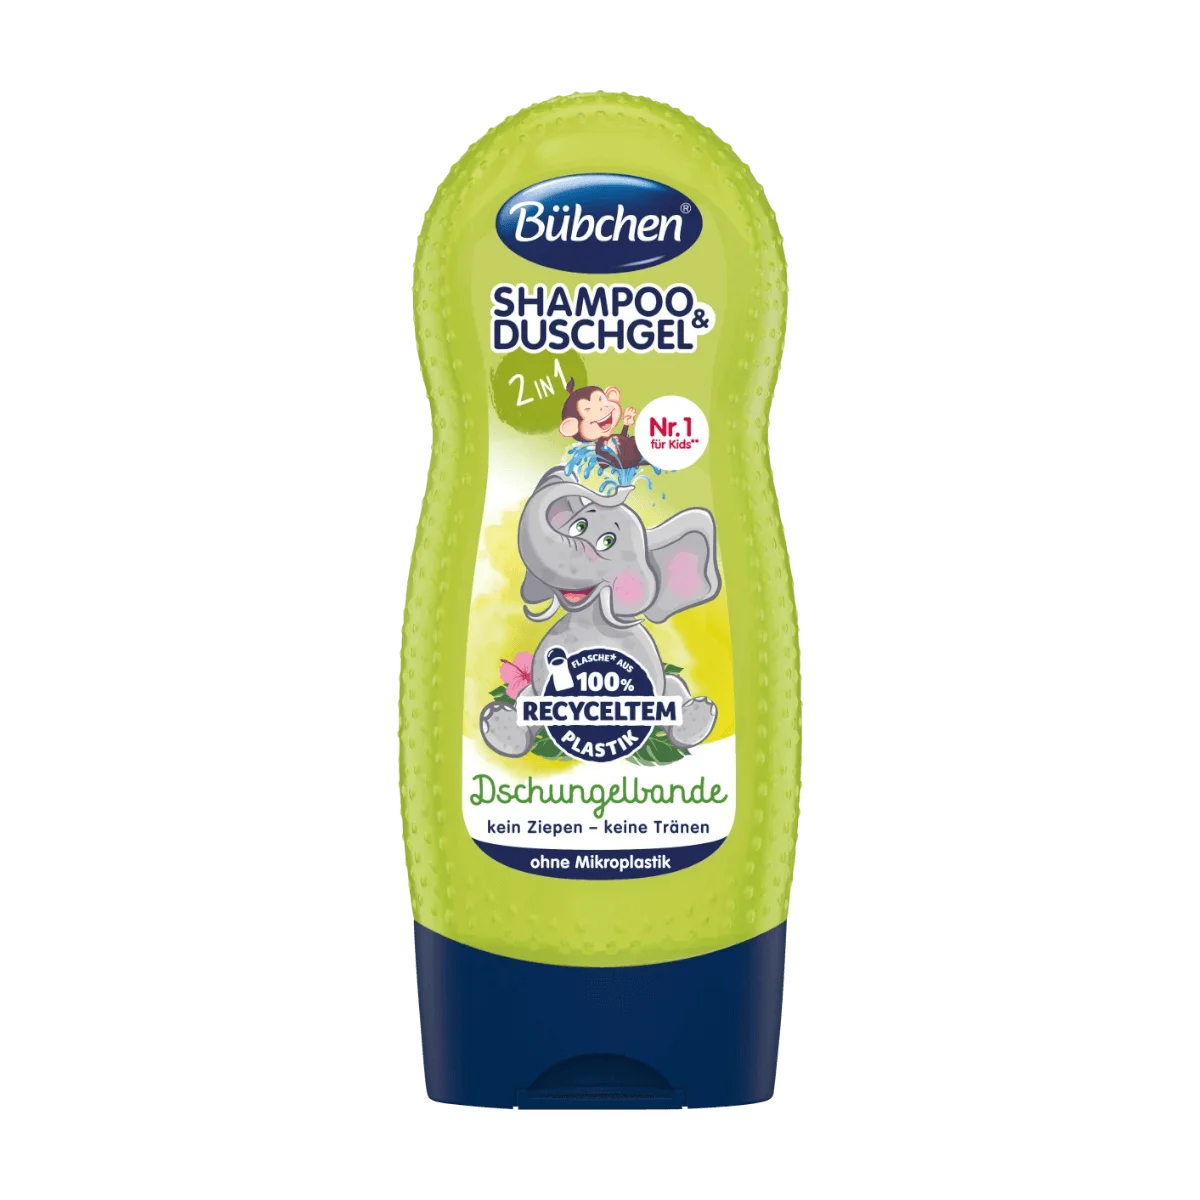 Bübchen Shampoo & Duschgel Dschungelbande, 230 ml